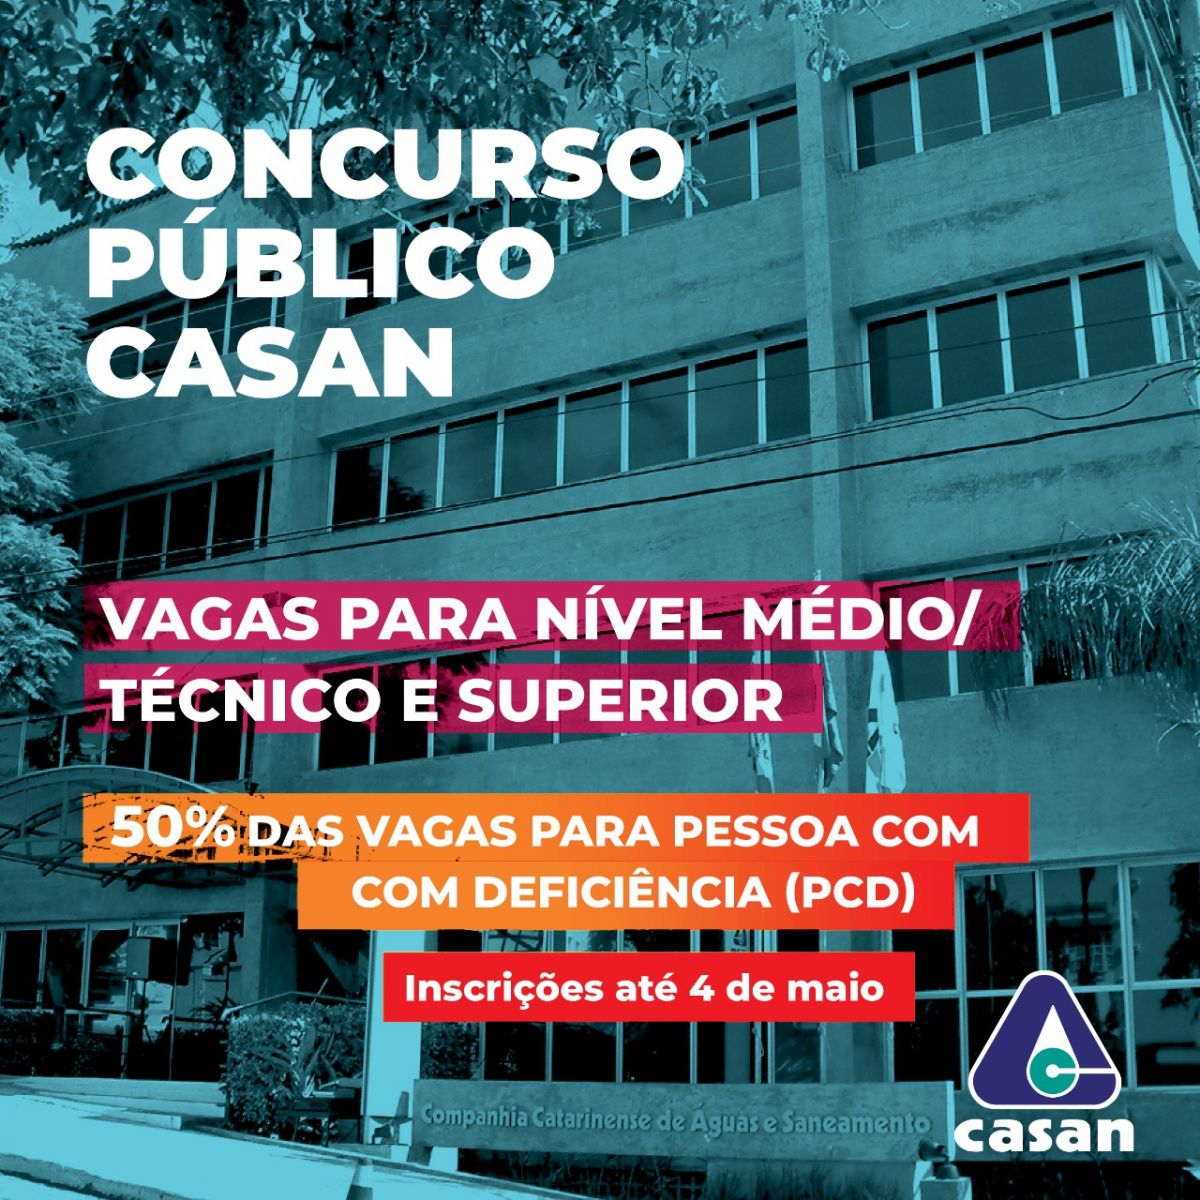 CASAN - Companhia Catarinense de Águas e Saneamento